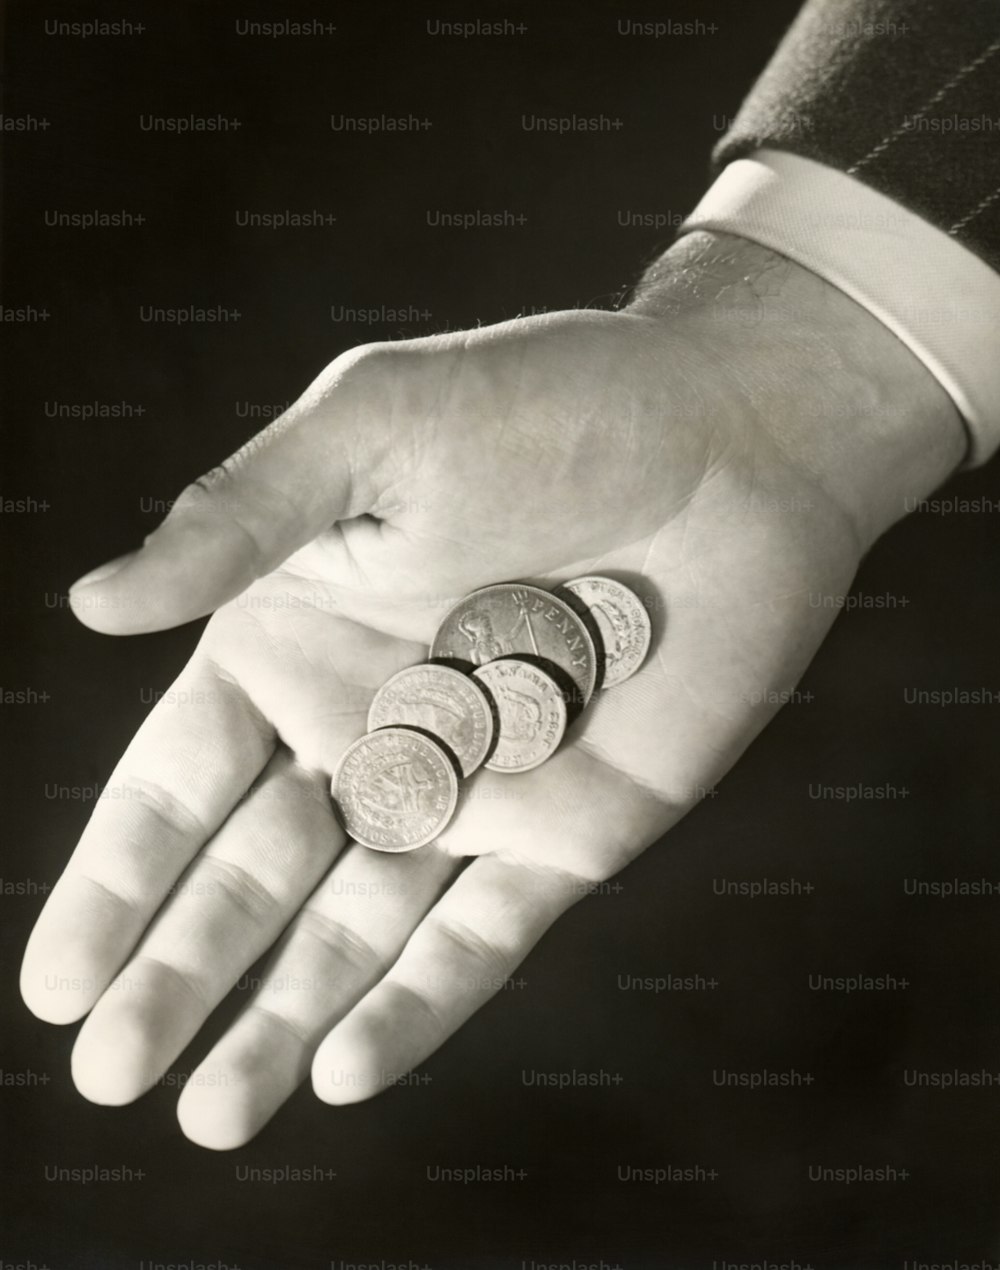 ÉTATS-UNIS - Vers les années 1950 : Pièces de monnaie dans la main de l’homme.